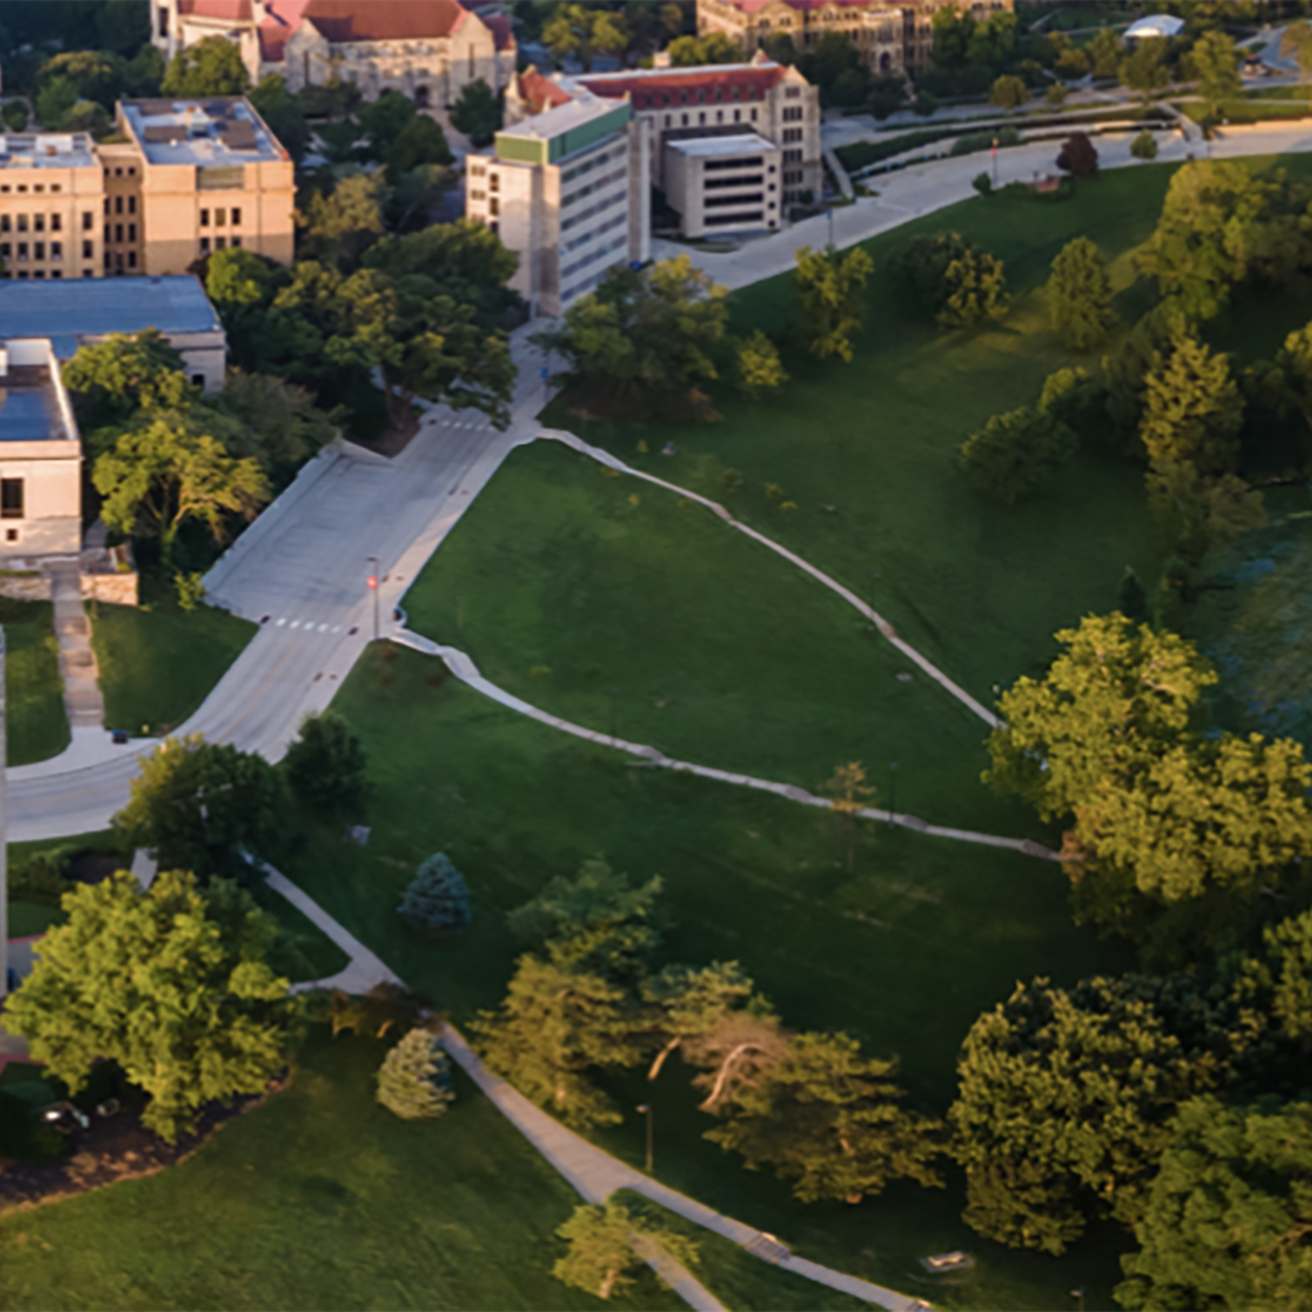 University of Kansas campus